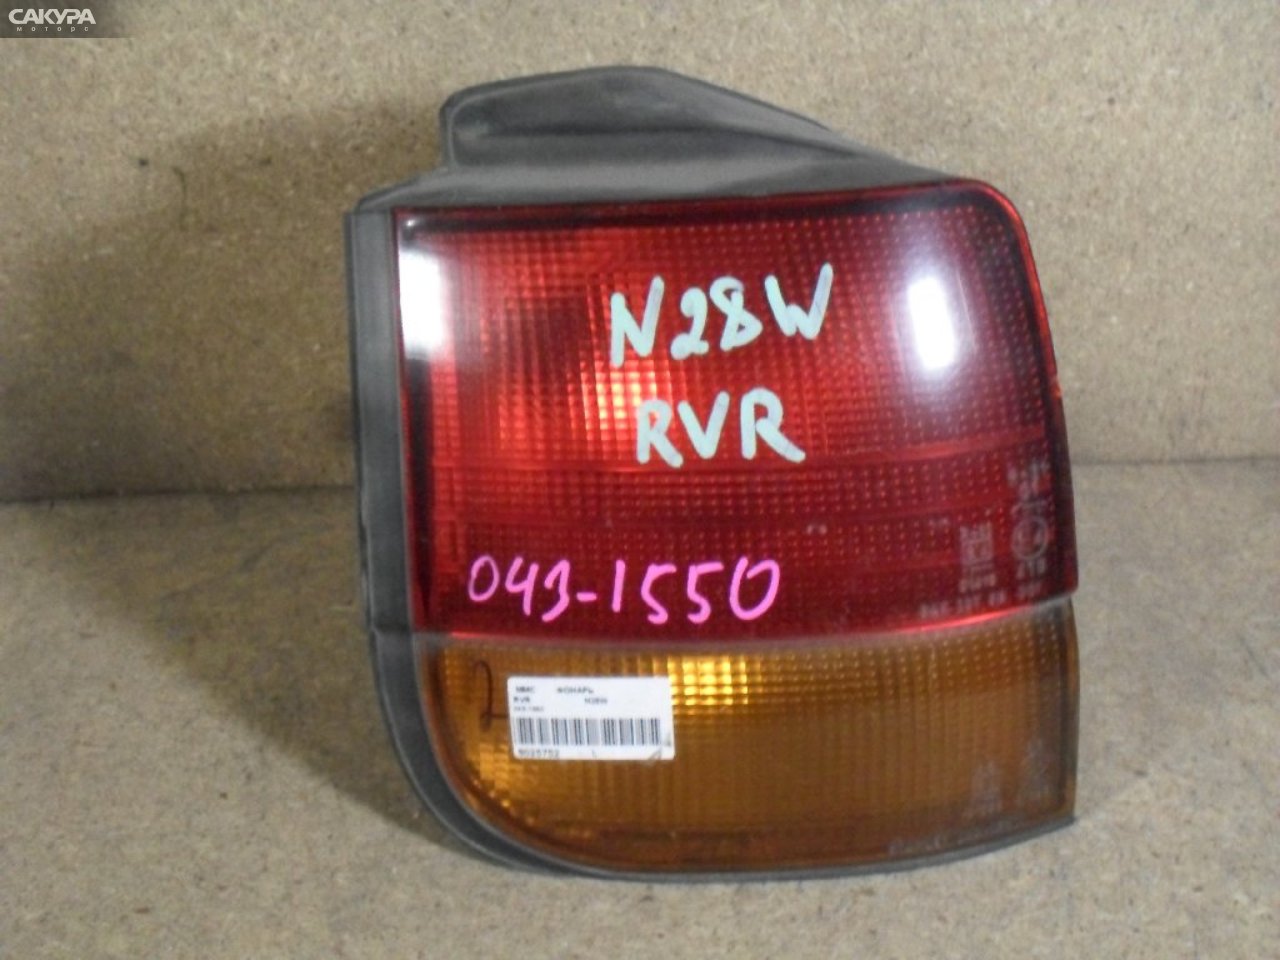 Фонарь стоп-сигнала левый Mitsubishi RVR N28W 043-1550: купить в Сакура Абакан.